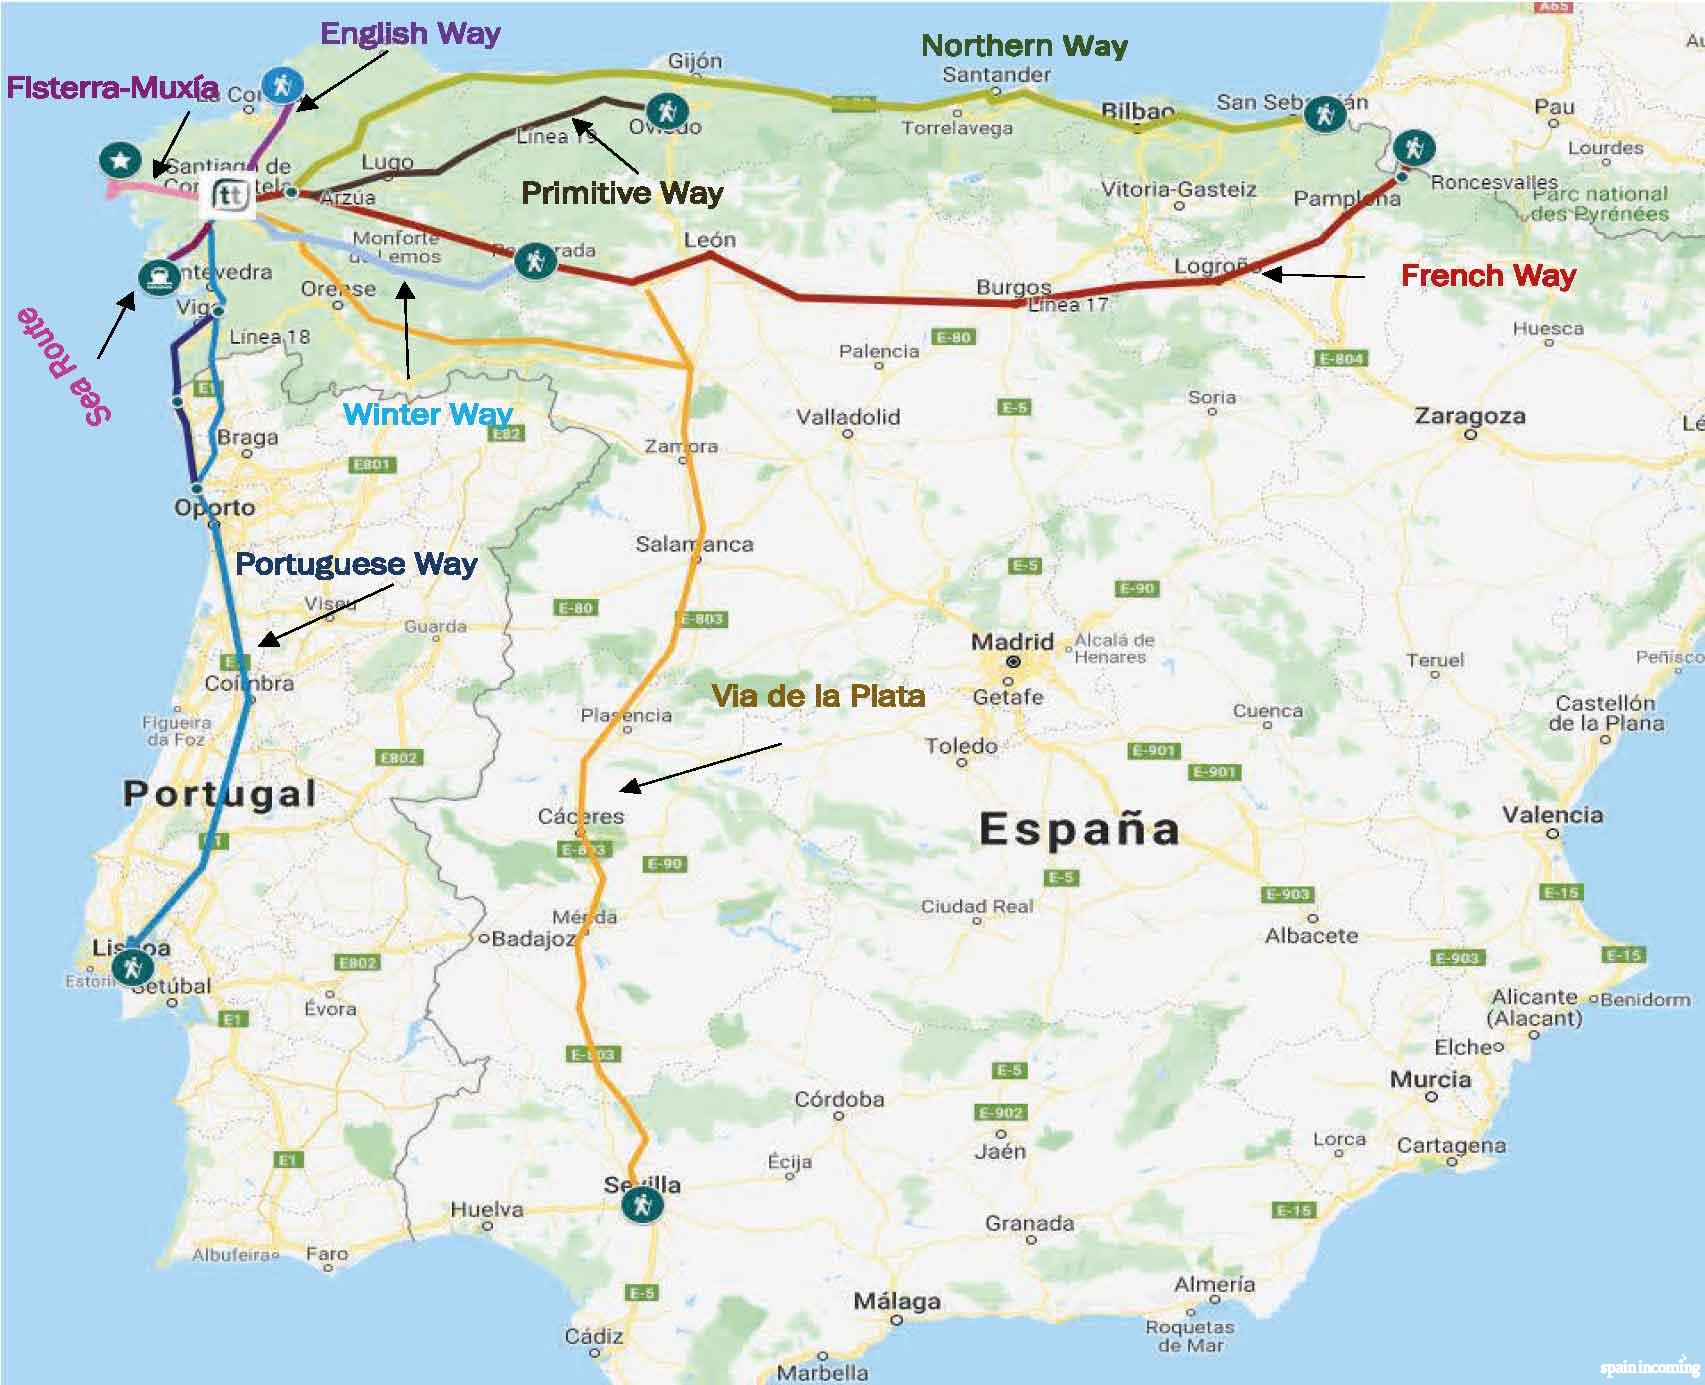 The 7 main Camino de Santiago routes